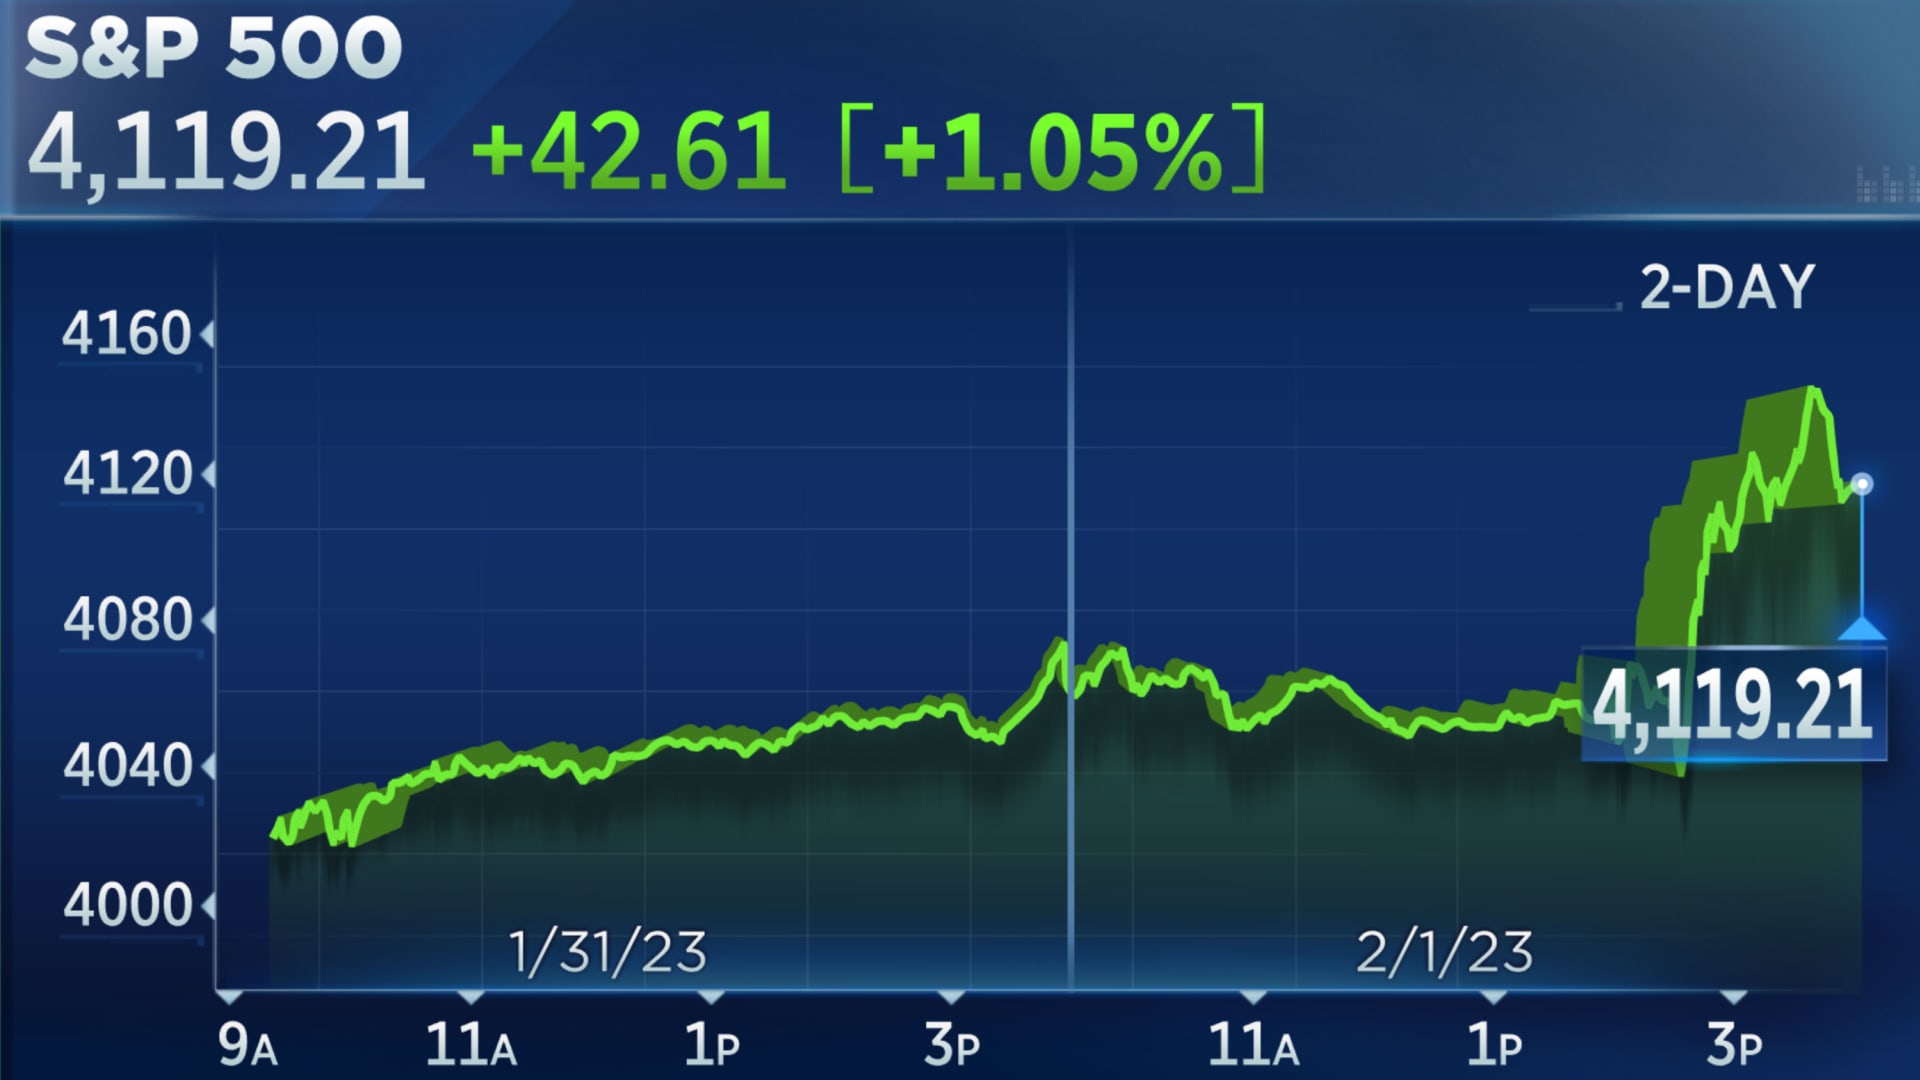 水曜日の S&P 500 は値を上げて取引を終了し、投資家が FRB の利上げの先を見据えたため、ナスダックは 2% 上昇しました。